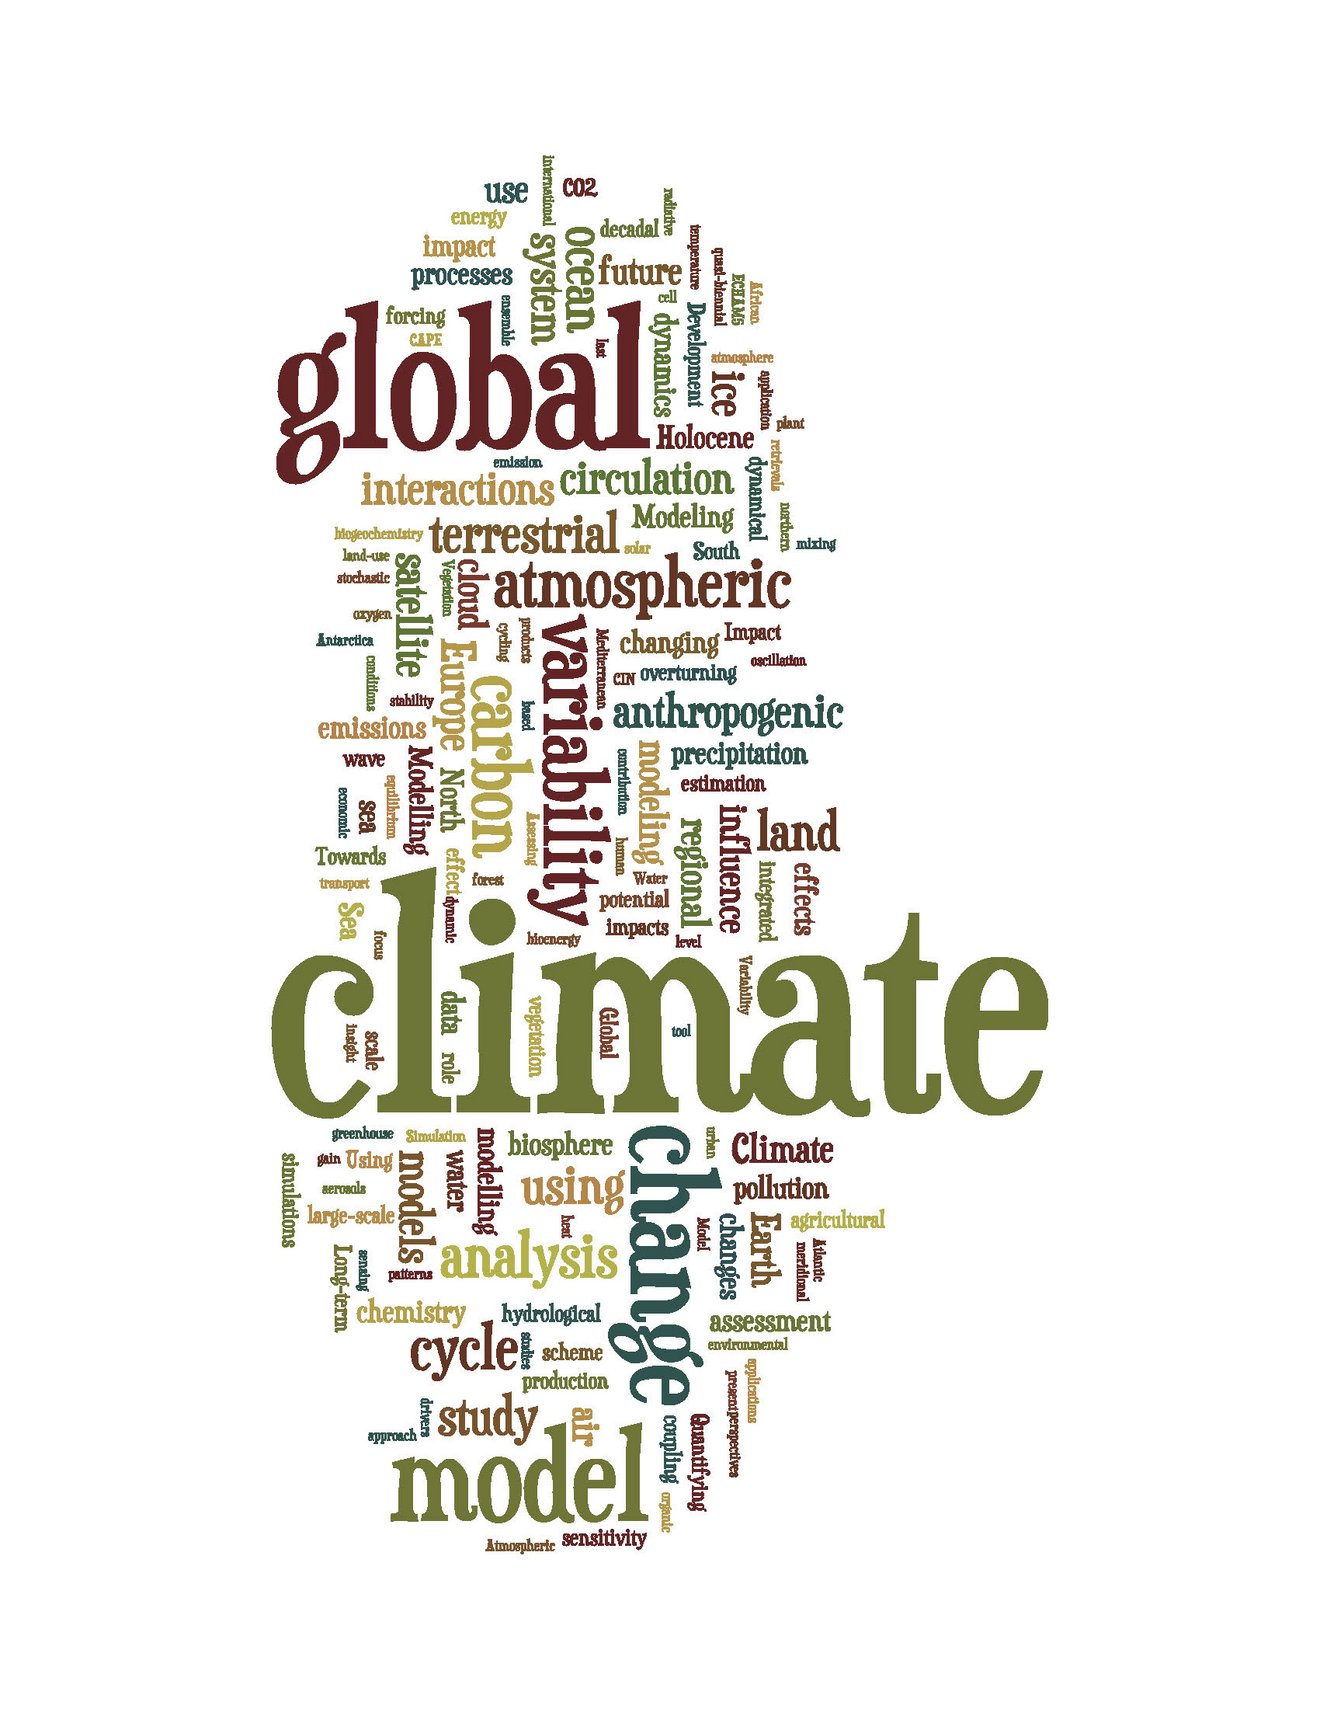 Abbildung: Wortliste mit klimabezogenen Begriffen